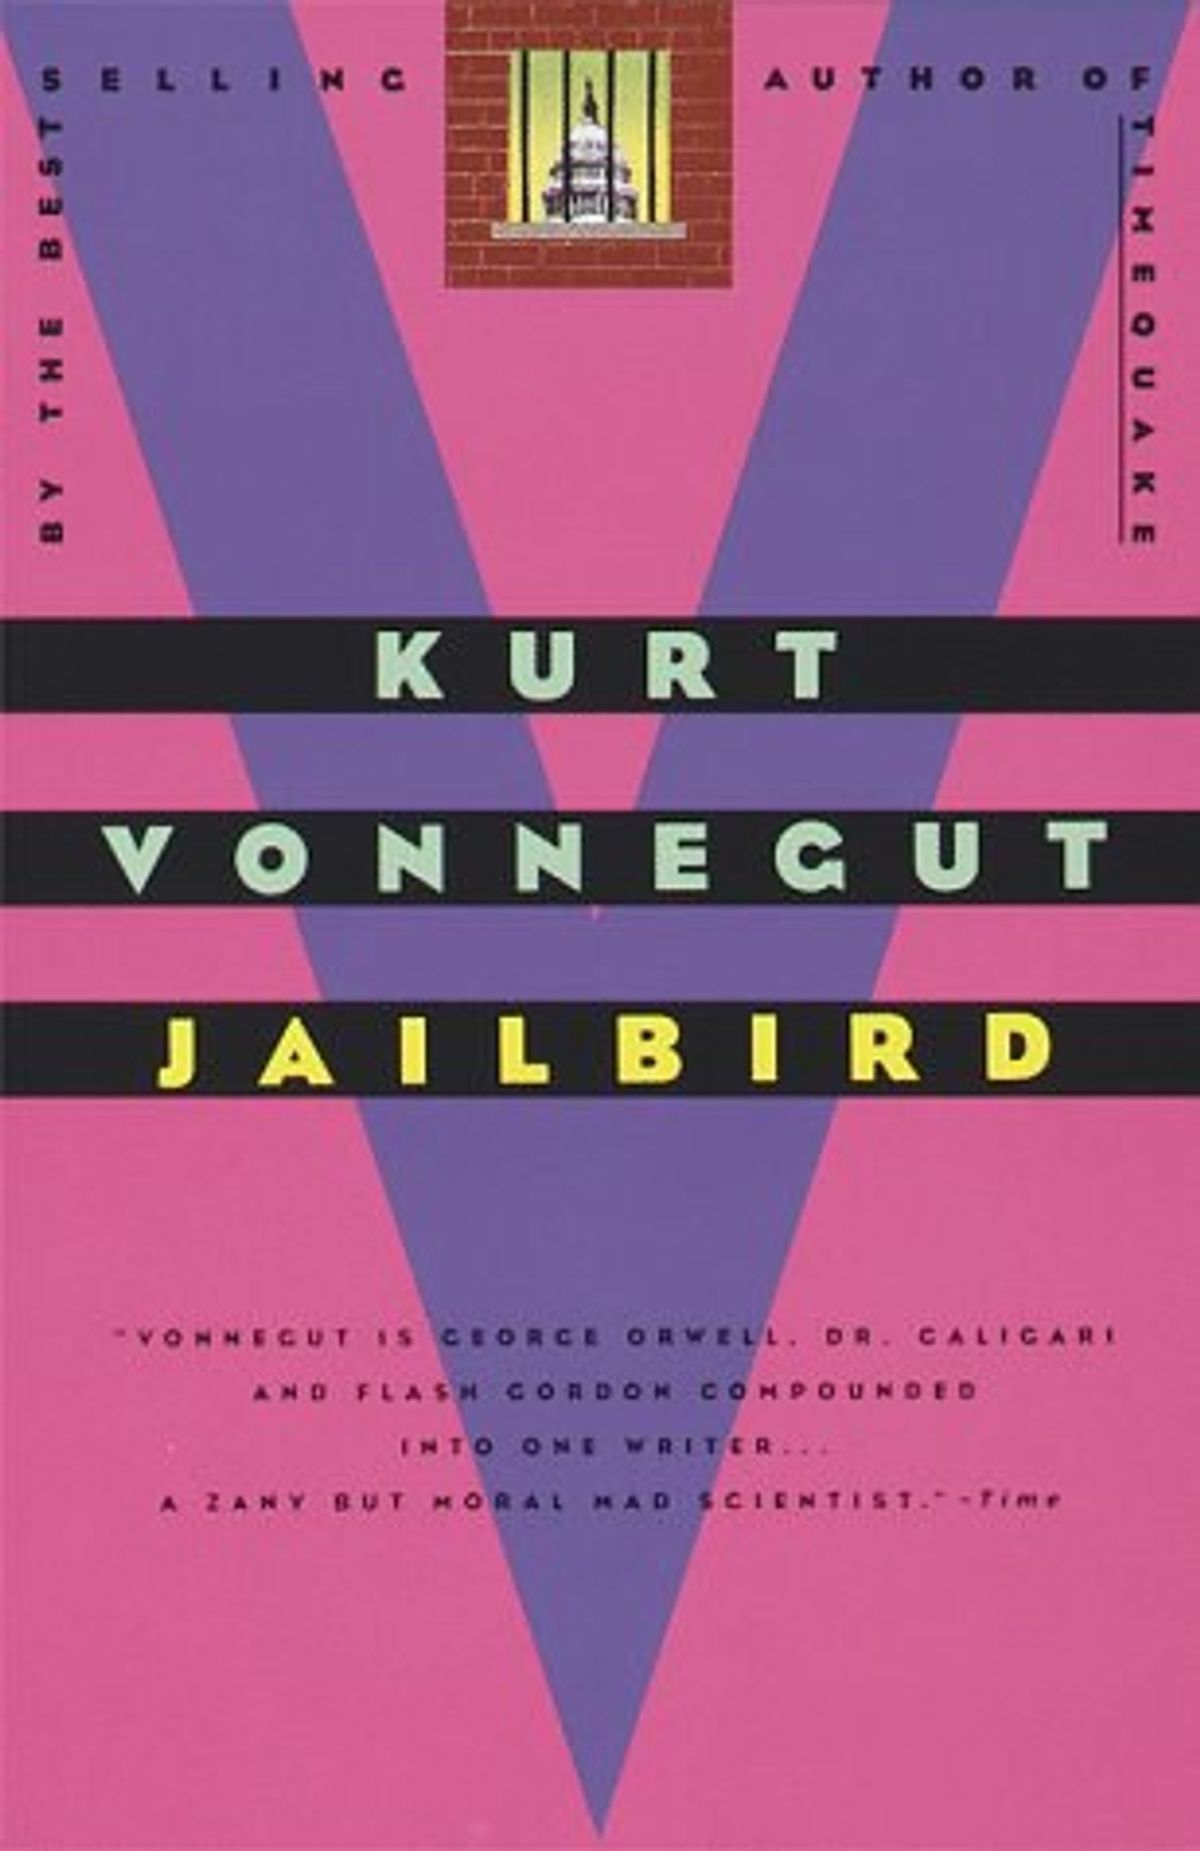 Book Review Of "Jailbird"